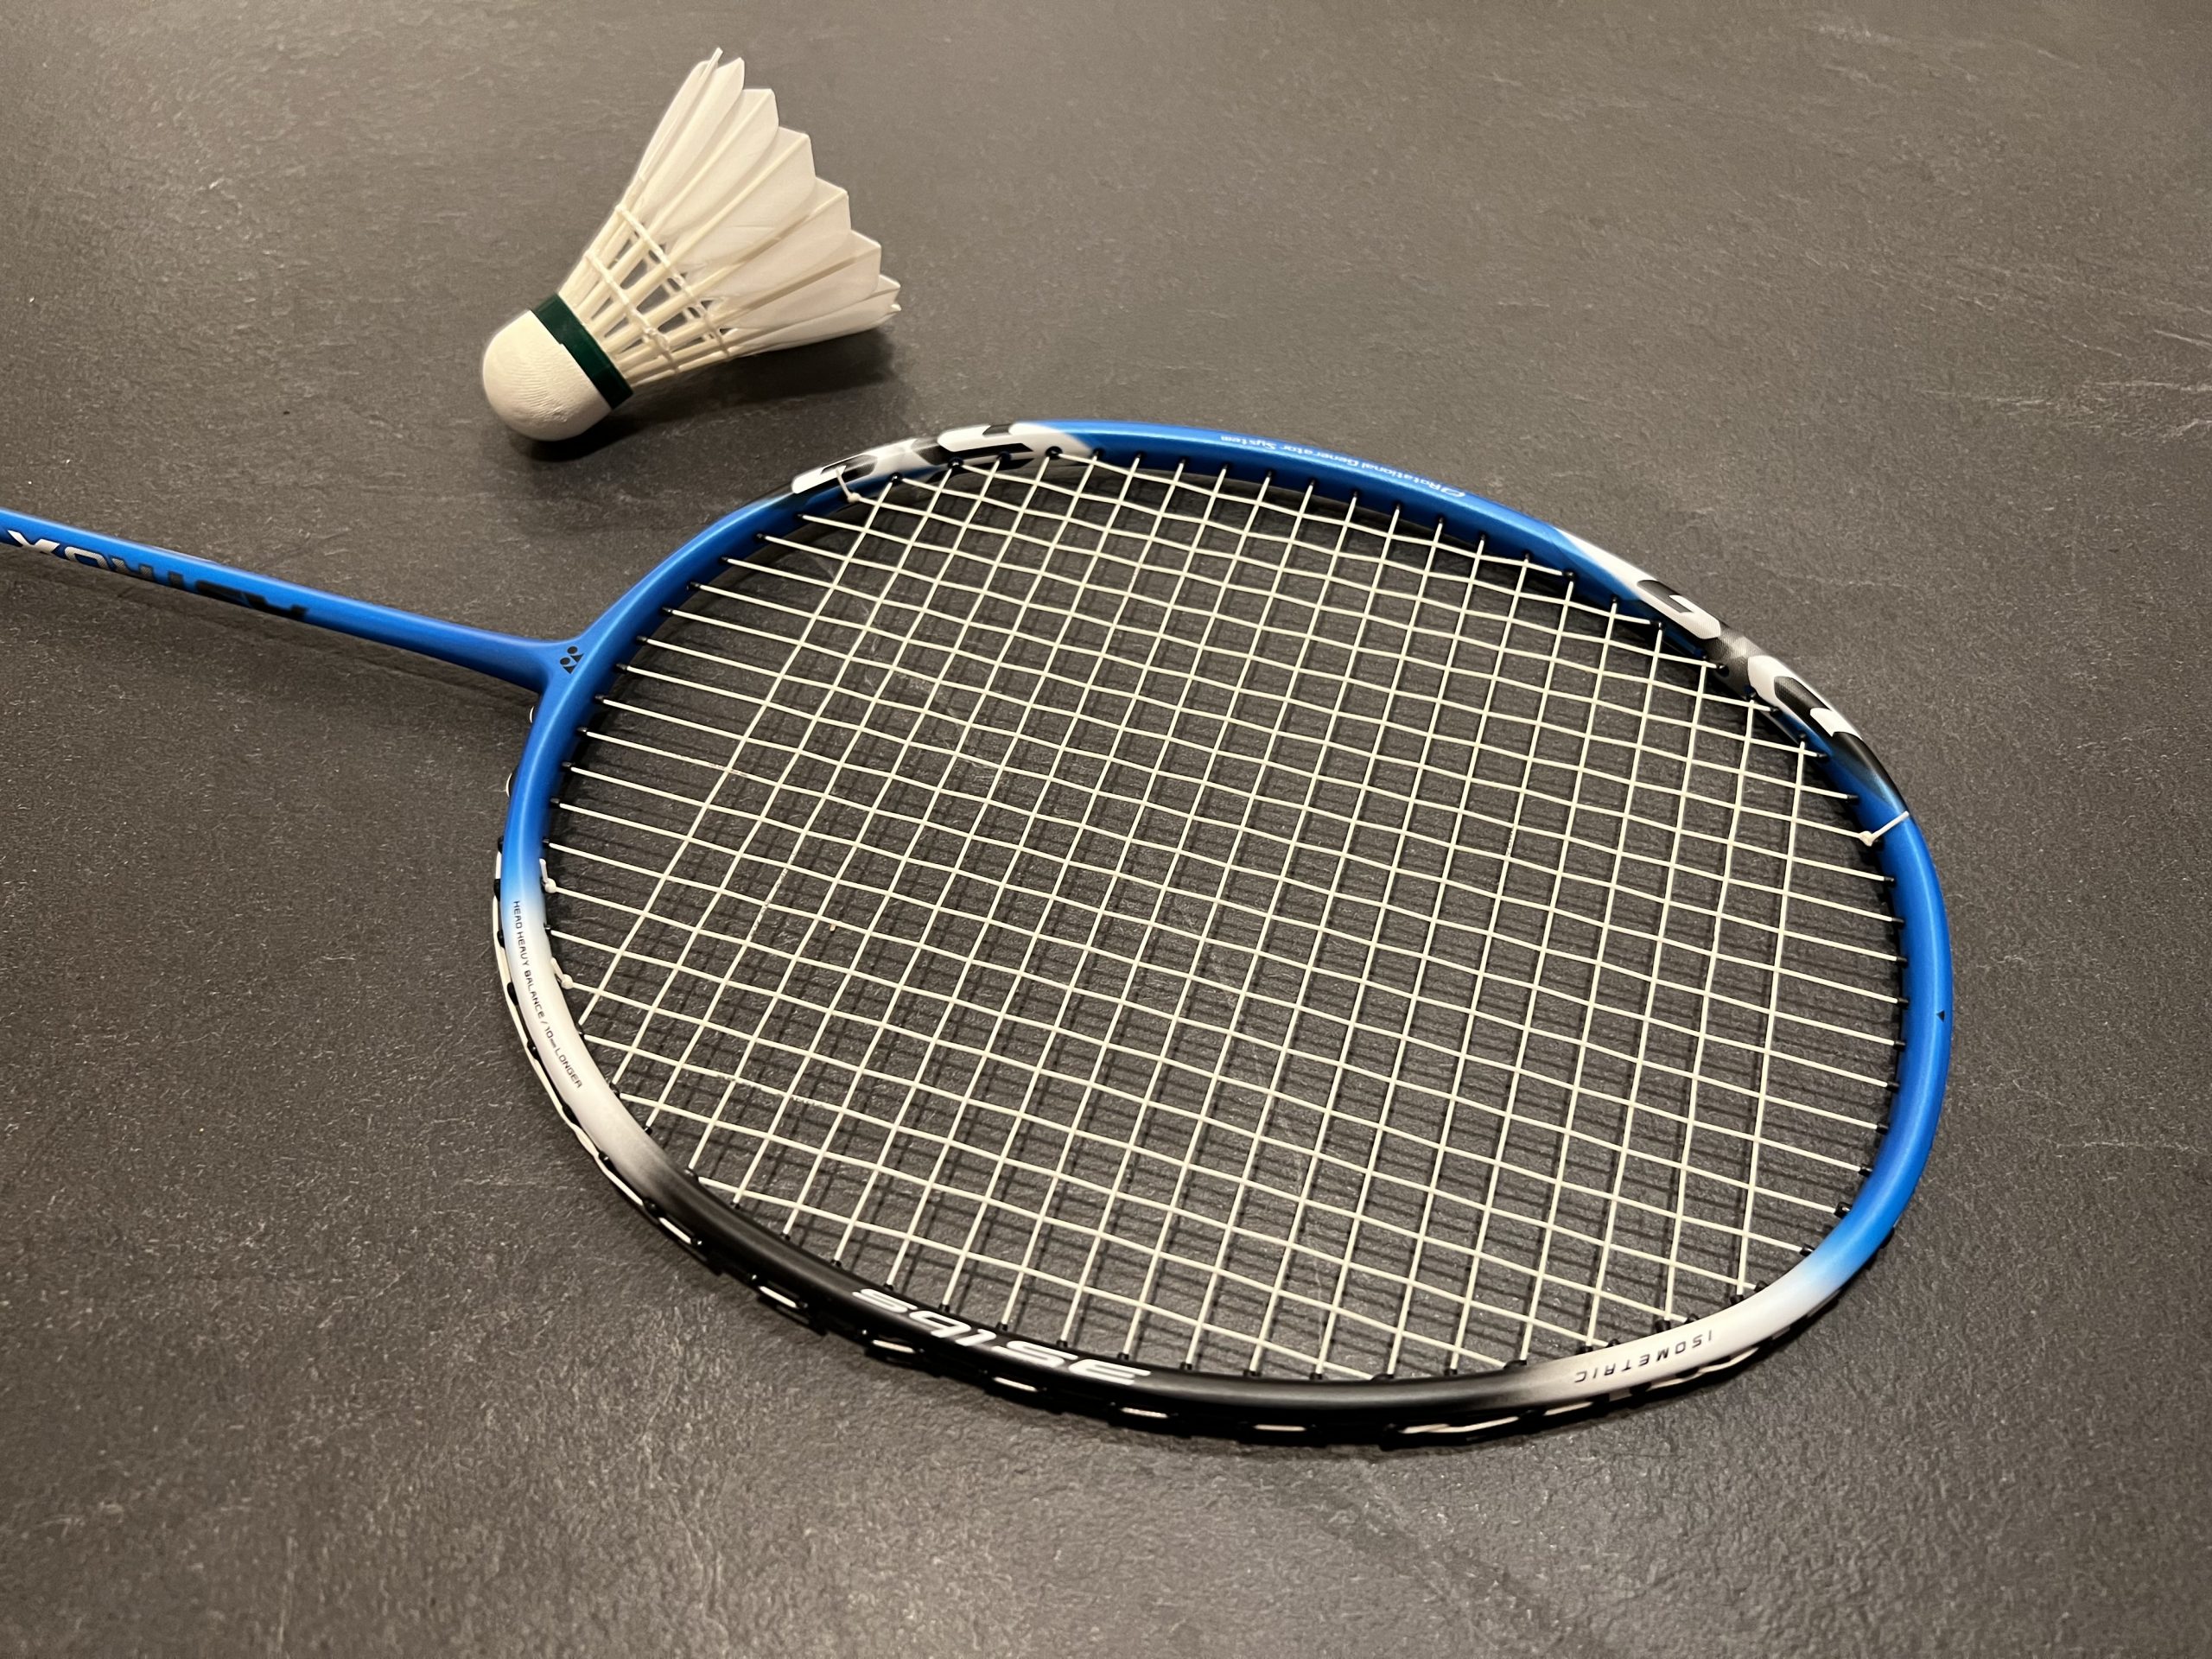 Yonex Astrox 1 DG Badmintonschläger